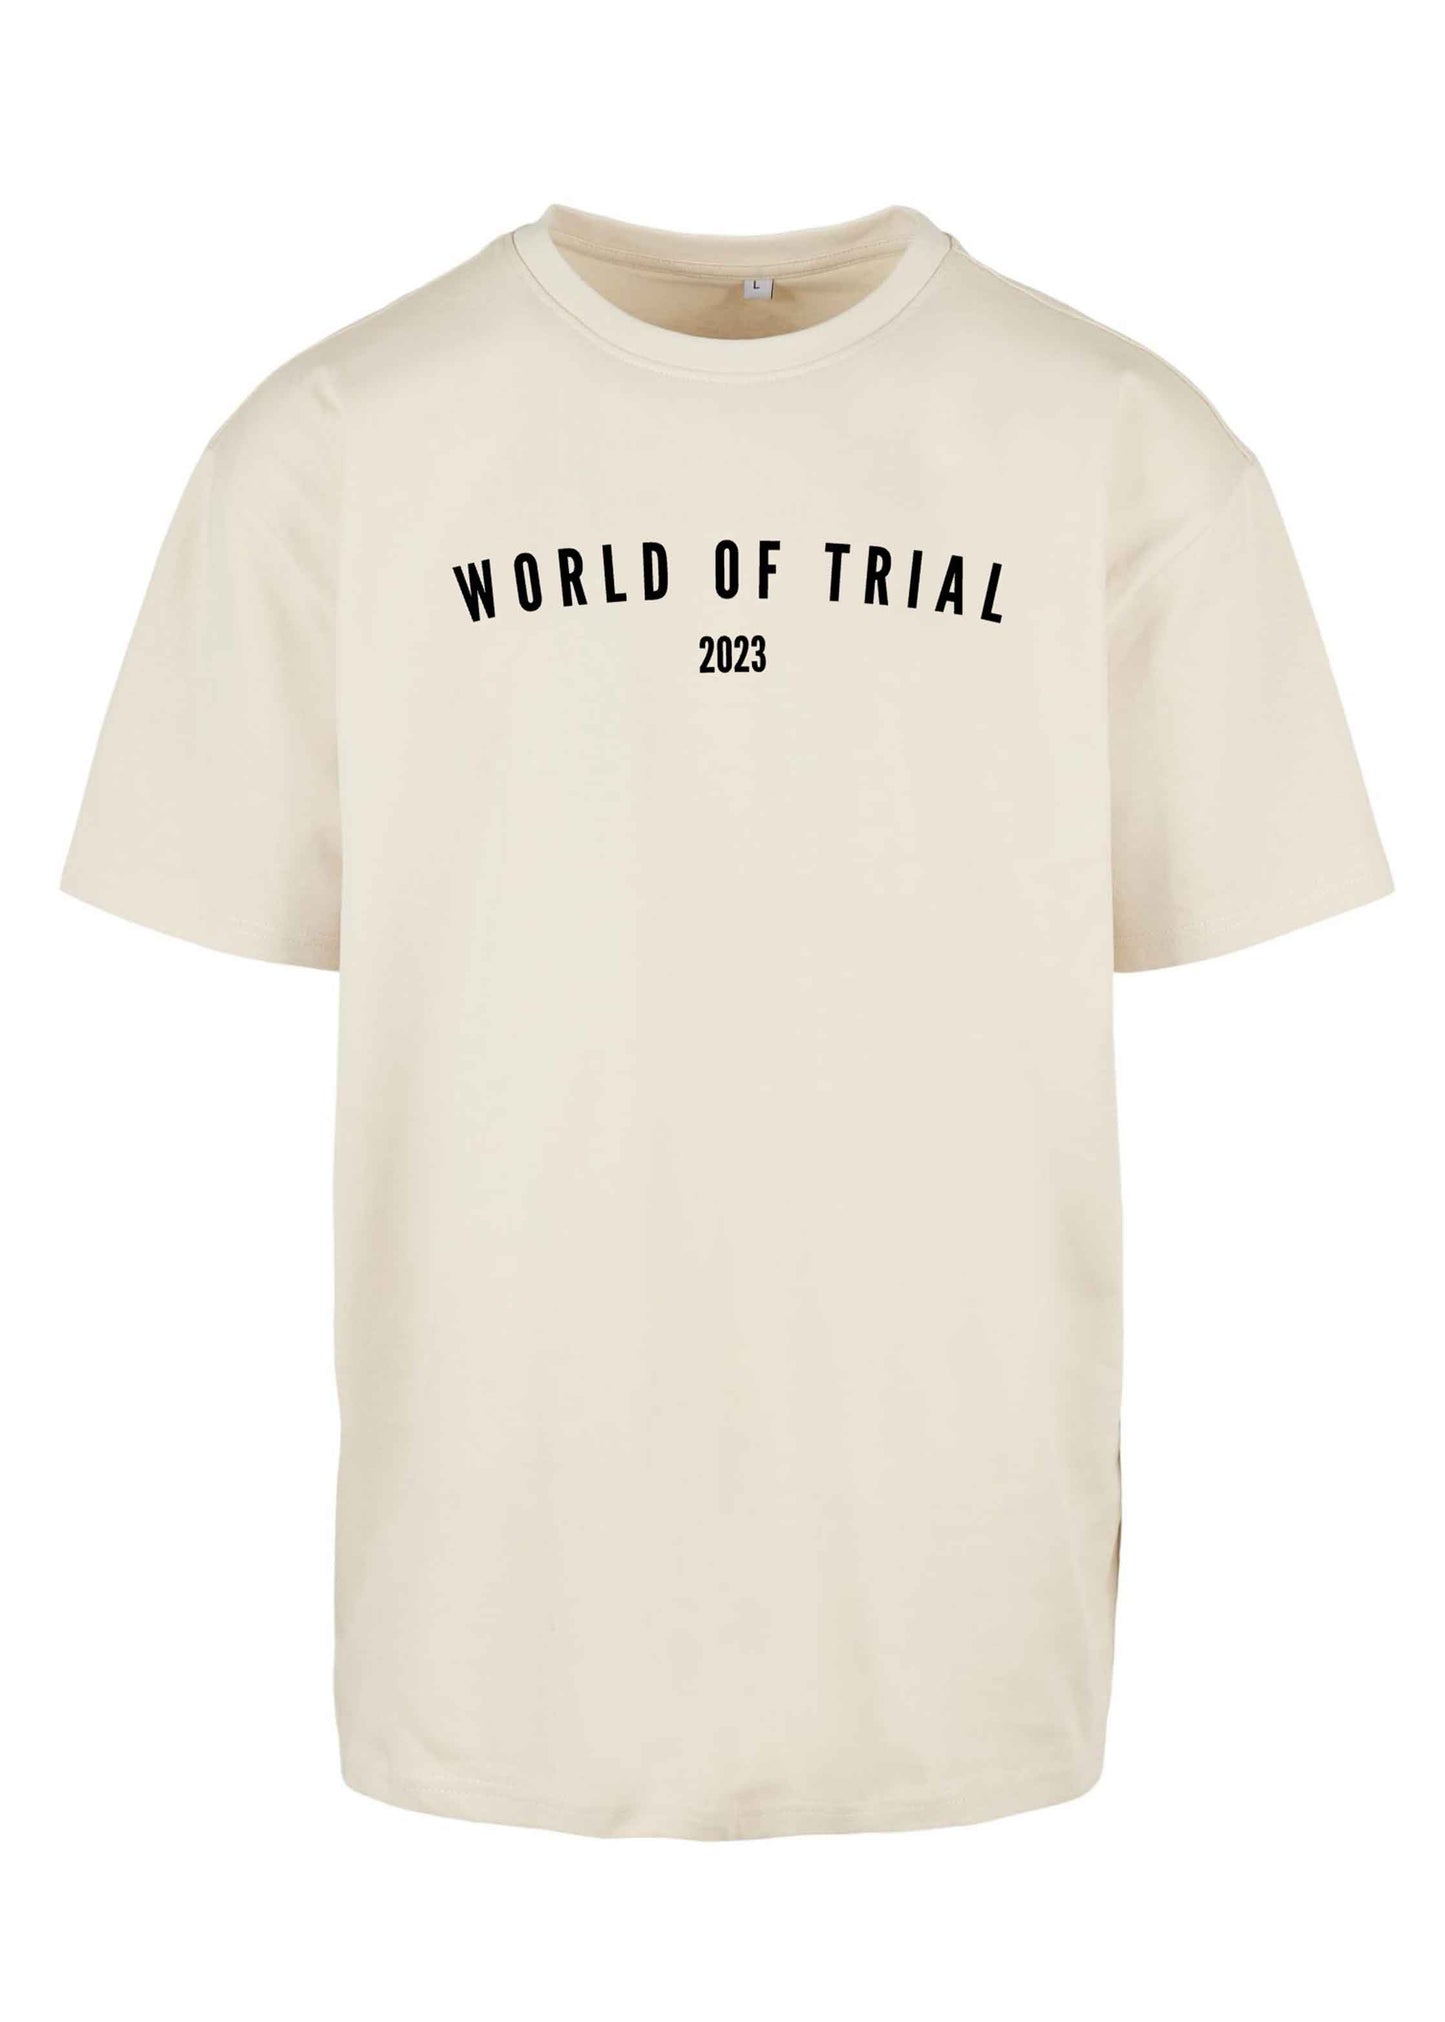 Oversize T-Shirt in Farbe Sand mit World of Trial Schriftzug 2023